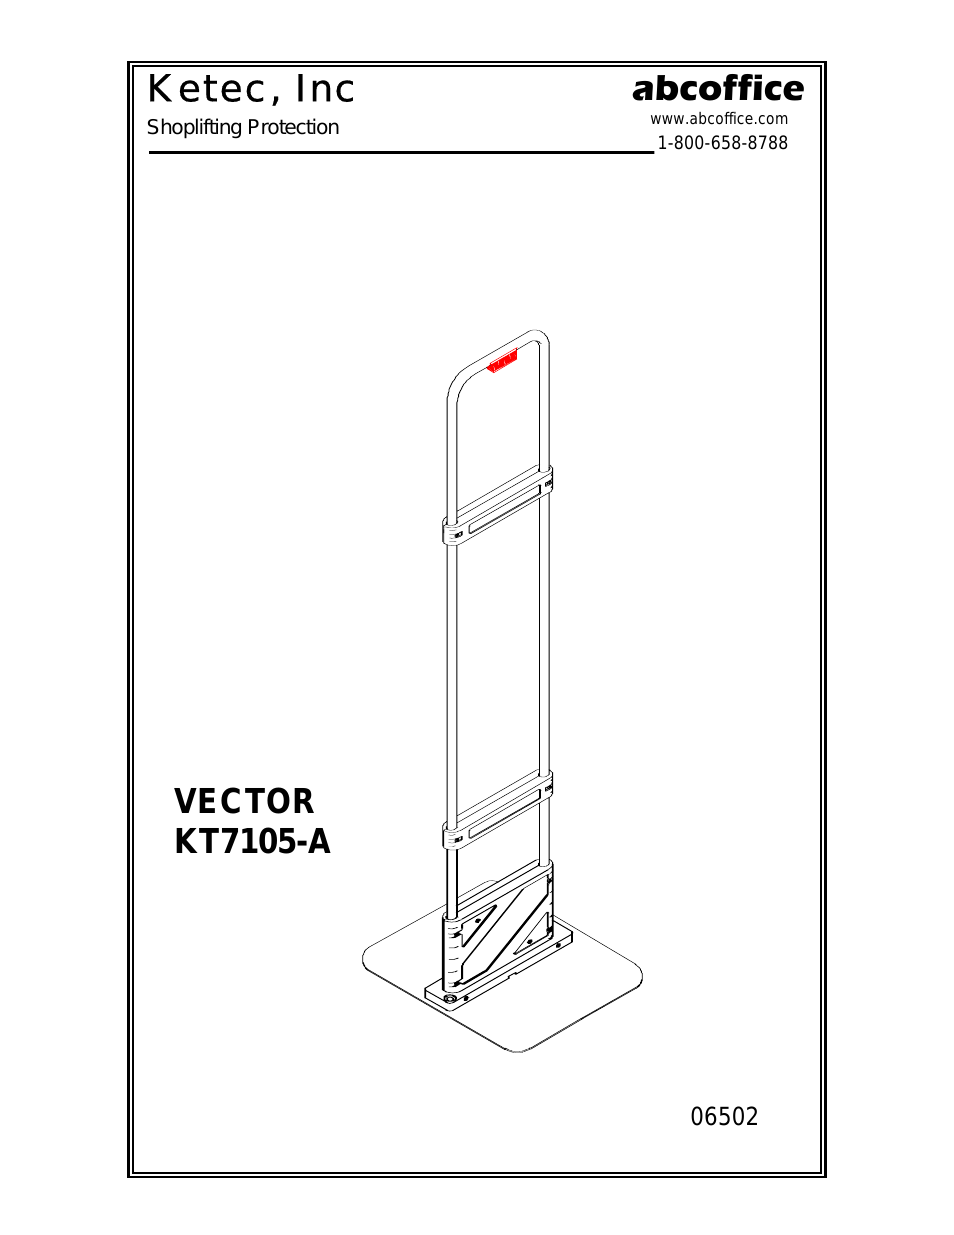 Vector 06502